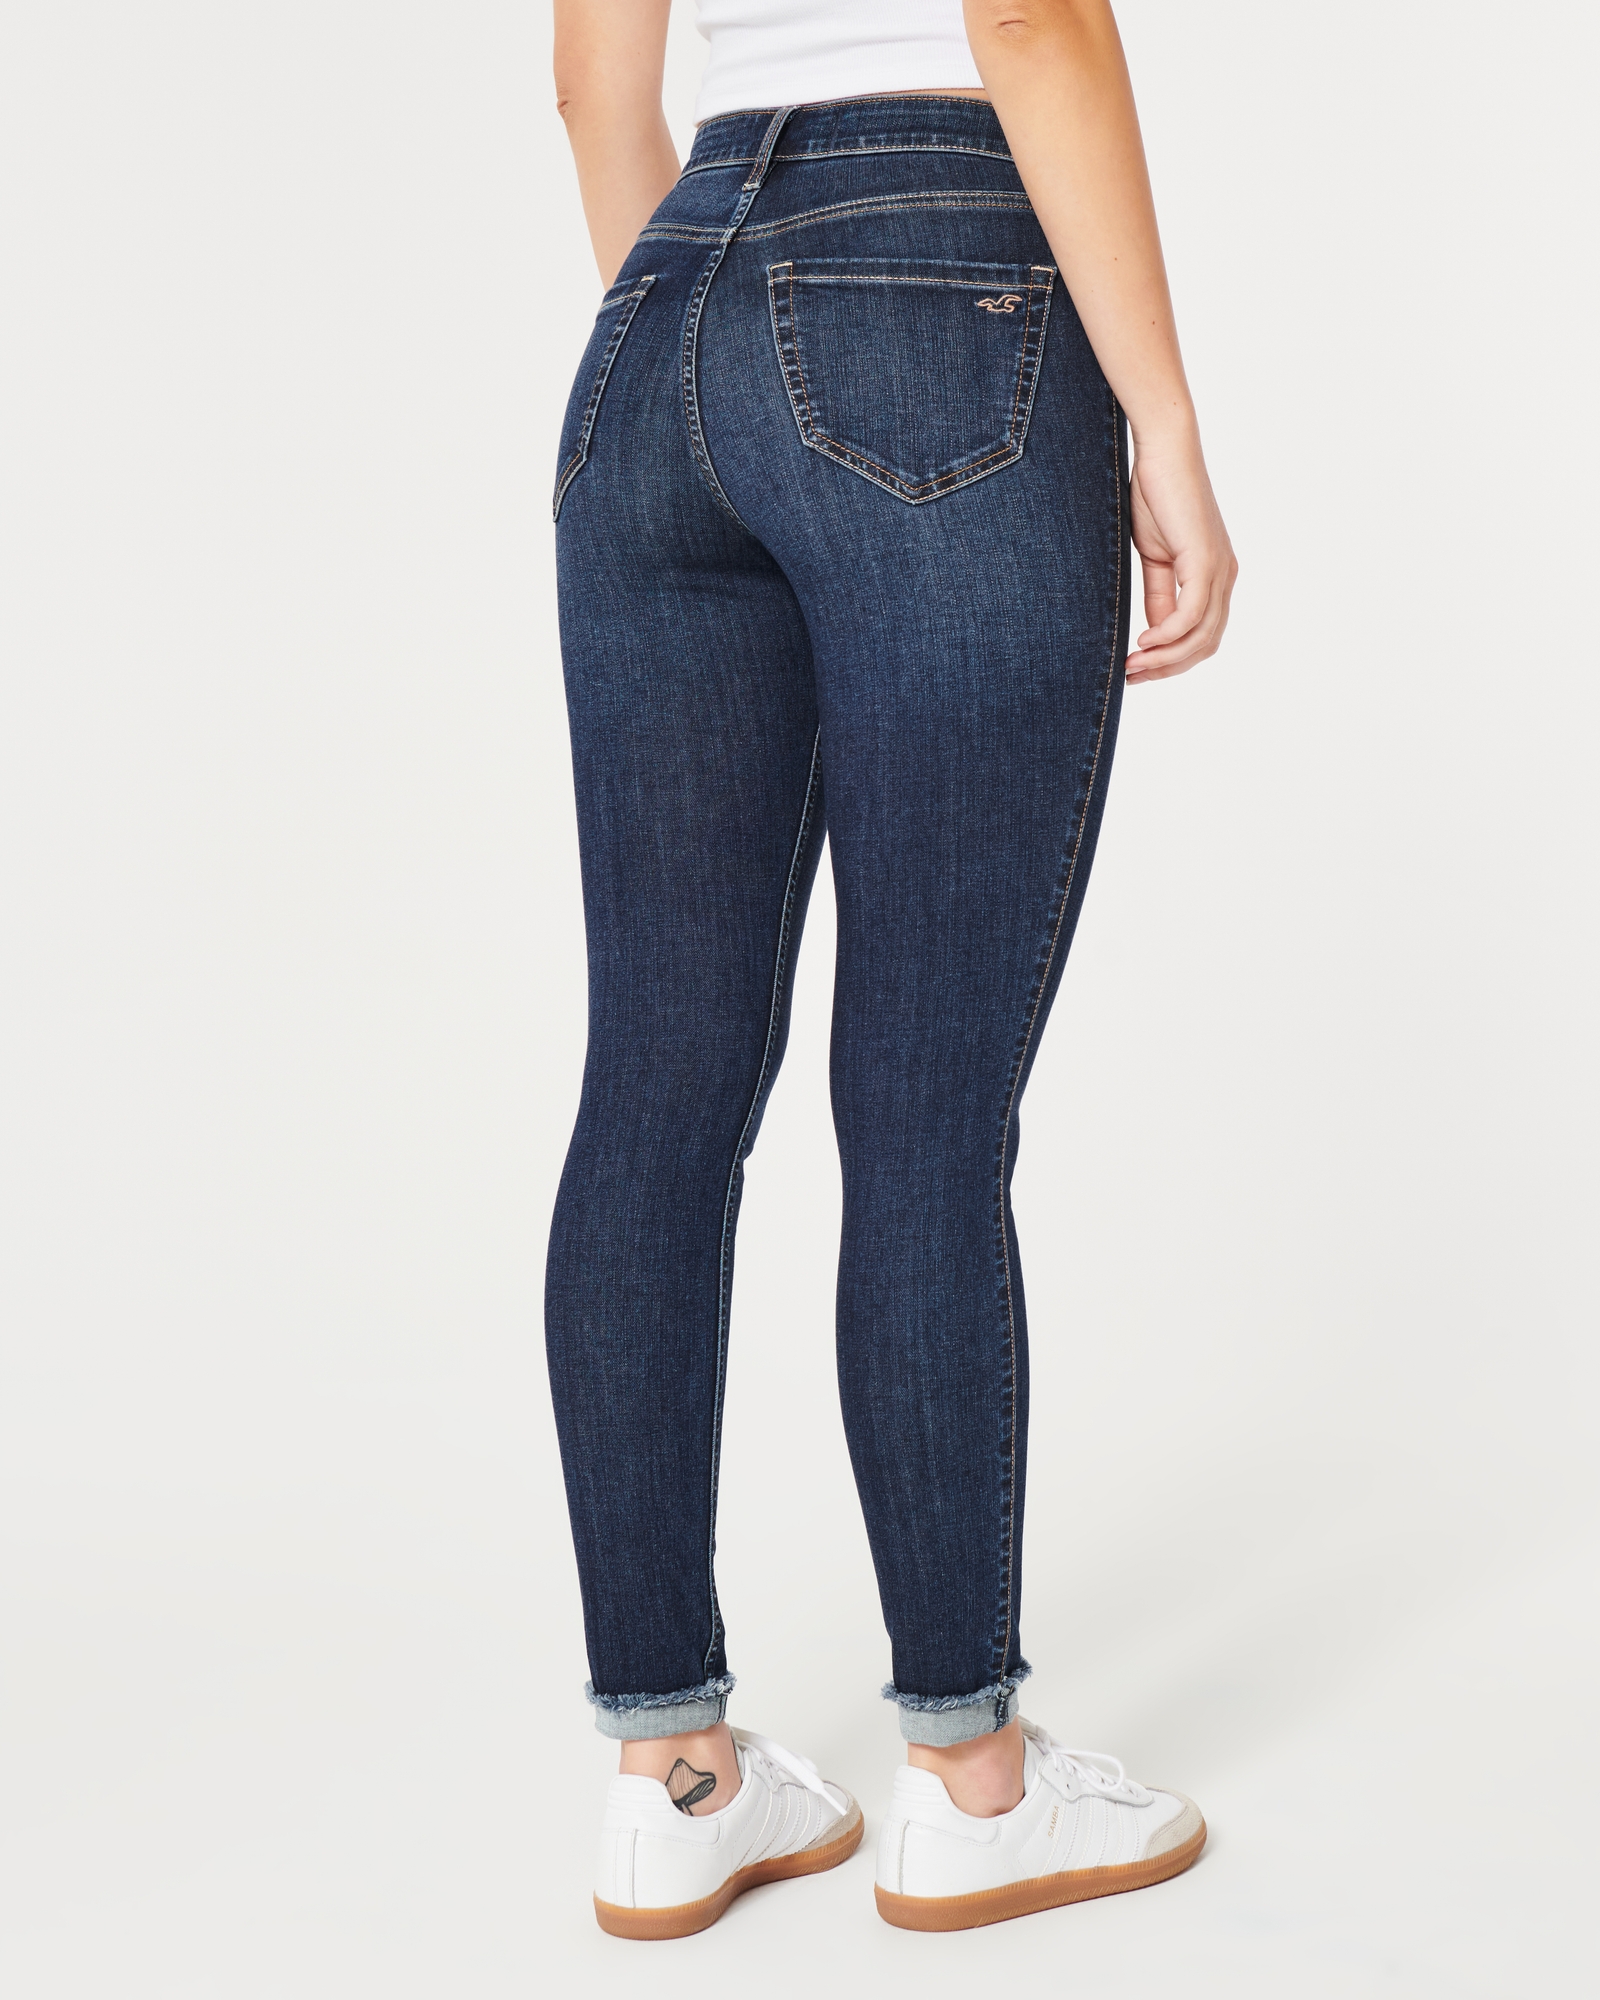 JEANS women Hollister low rise jean leggings size 30